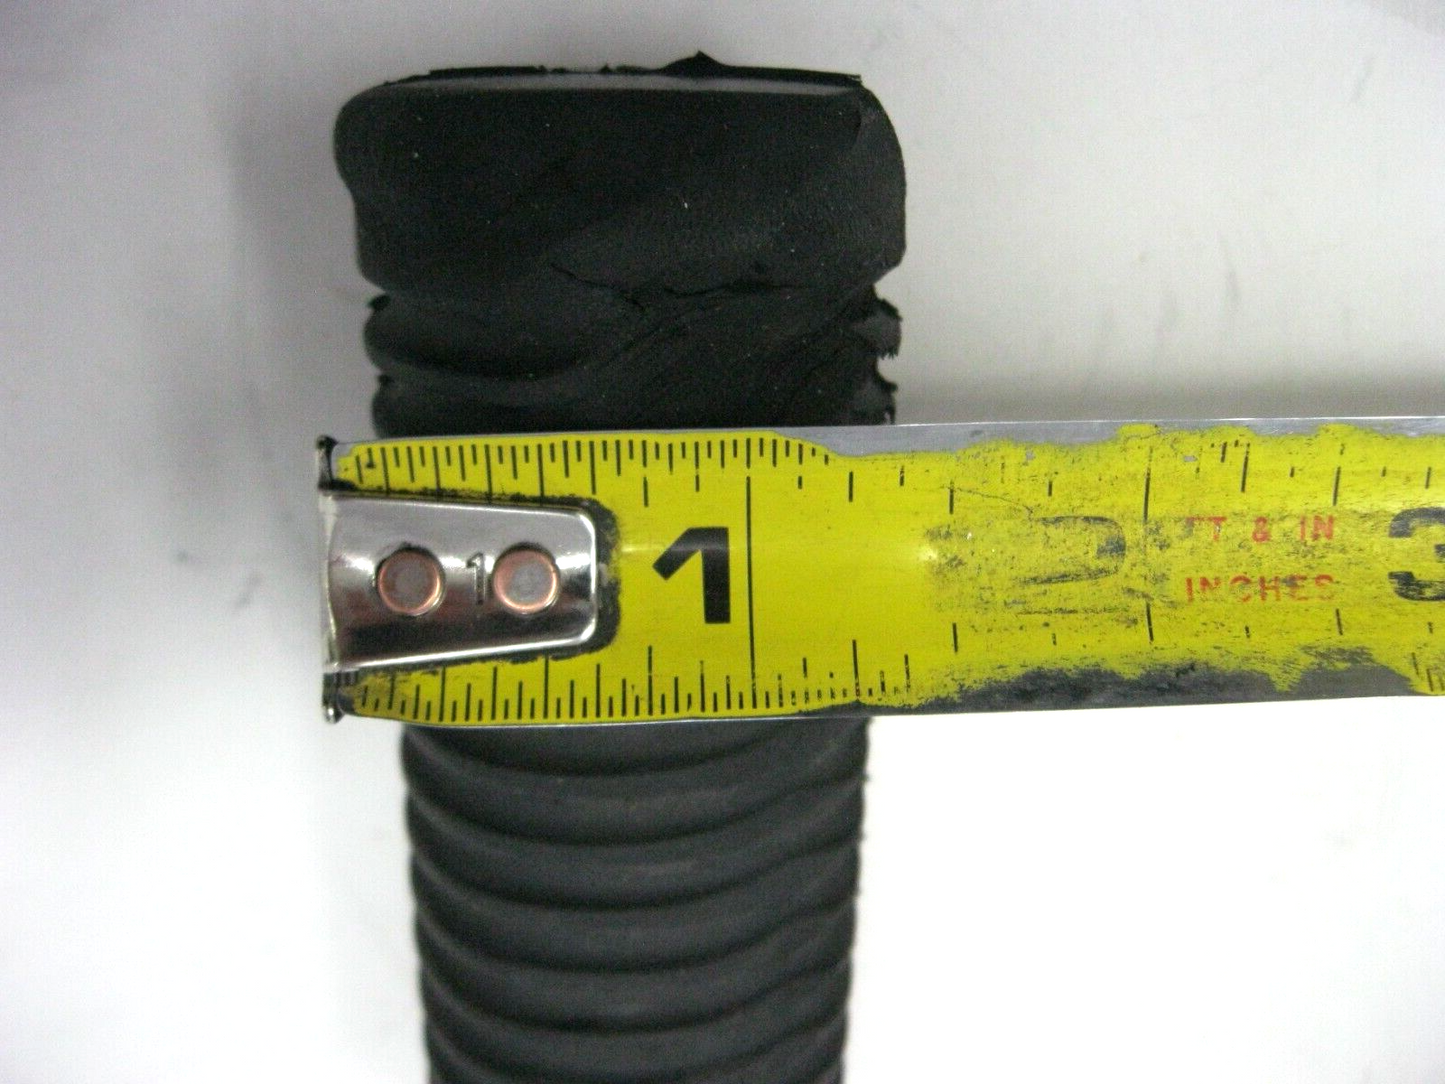 Harley Davidson OEM Used Rubber Stock Foot Peg Multi Fit 1 1/2" Diameter 1 Pair